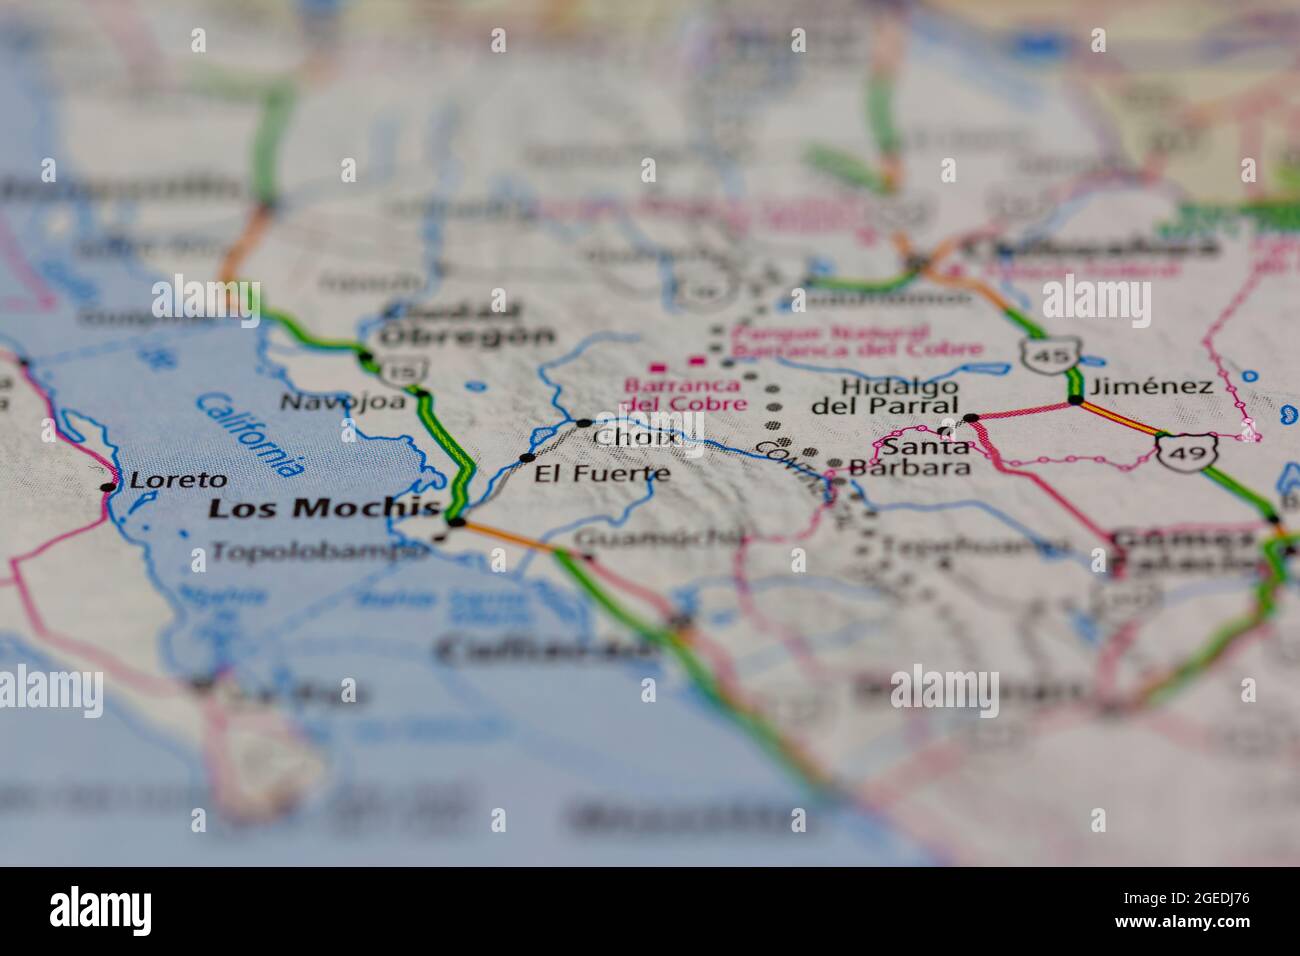 Choix Messico visualizzato su una mappa stradale o mappa geografica Foto Stock